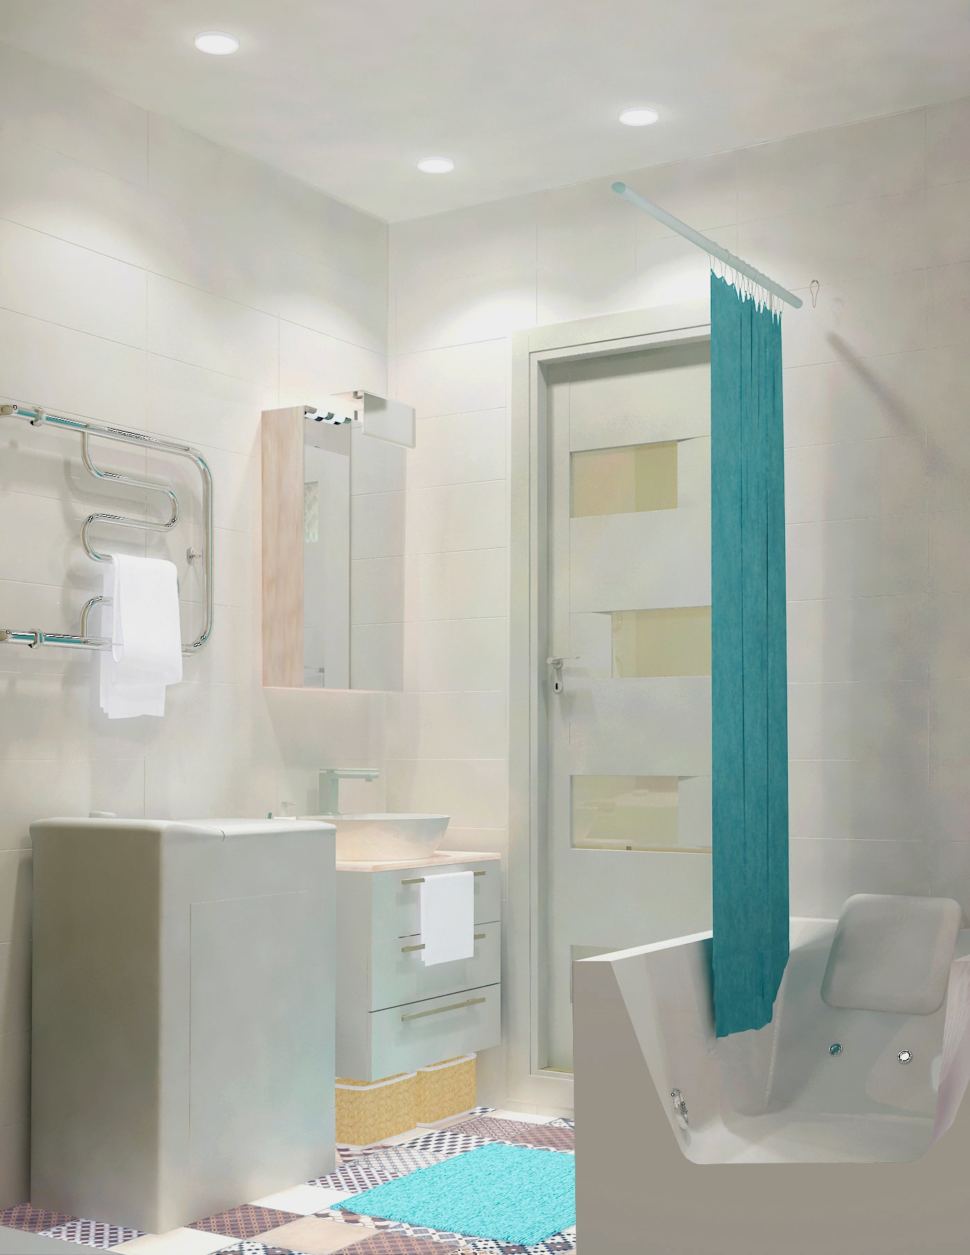 Визуализация ванной комнаты 3 кв.м. в светлых тонах, полотенцесушитель, стиральная машина, мойка, зеркальный шкаф